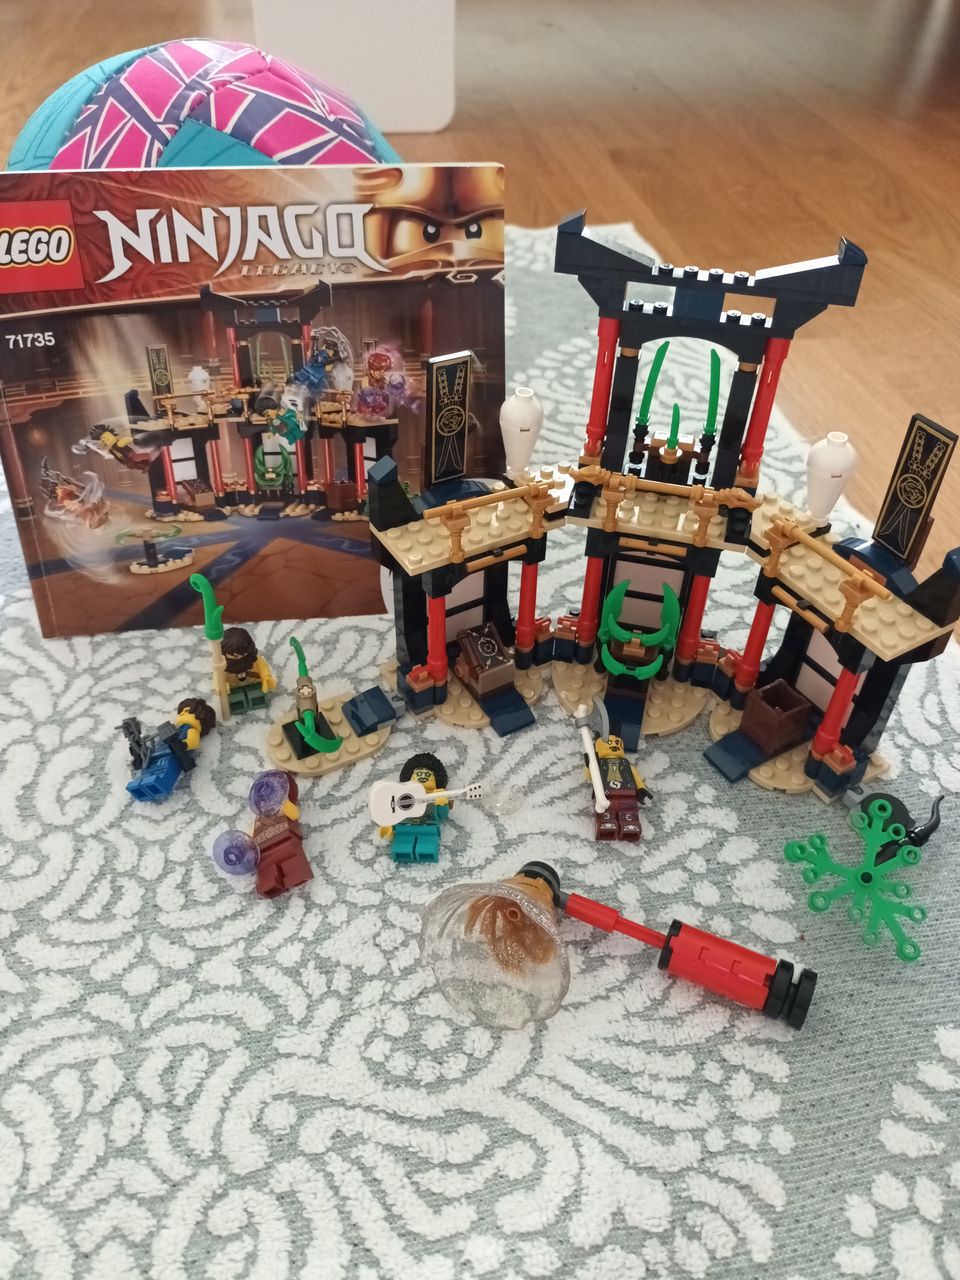 Lego Ninjago temppeli ja minifiguurit